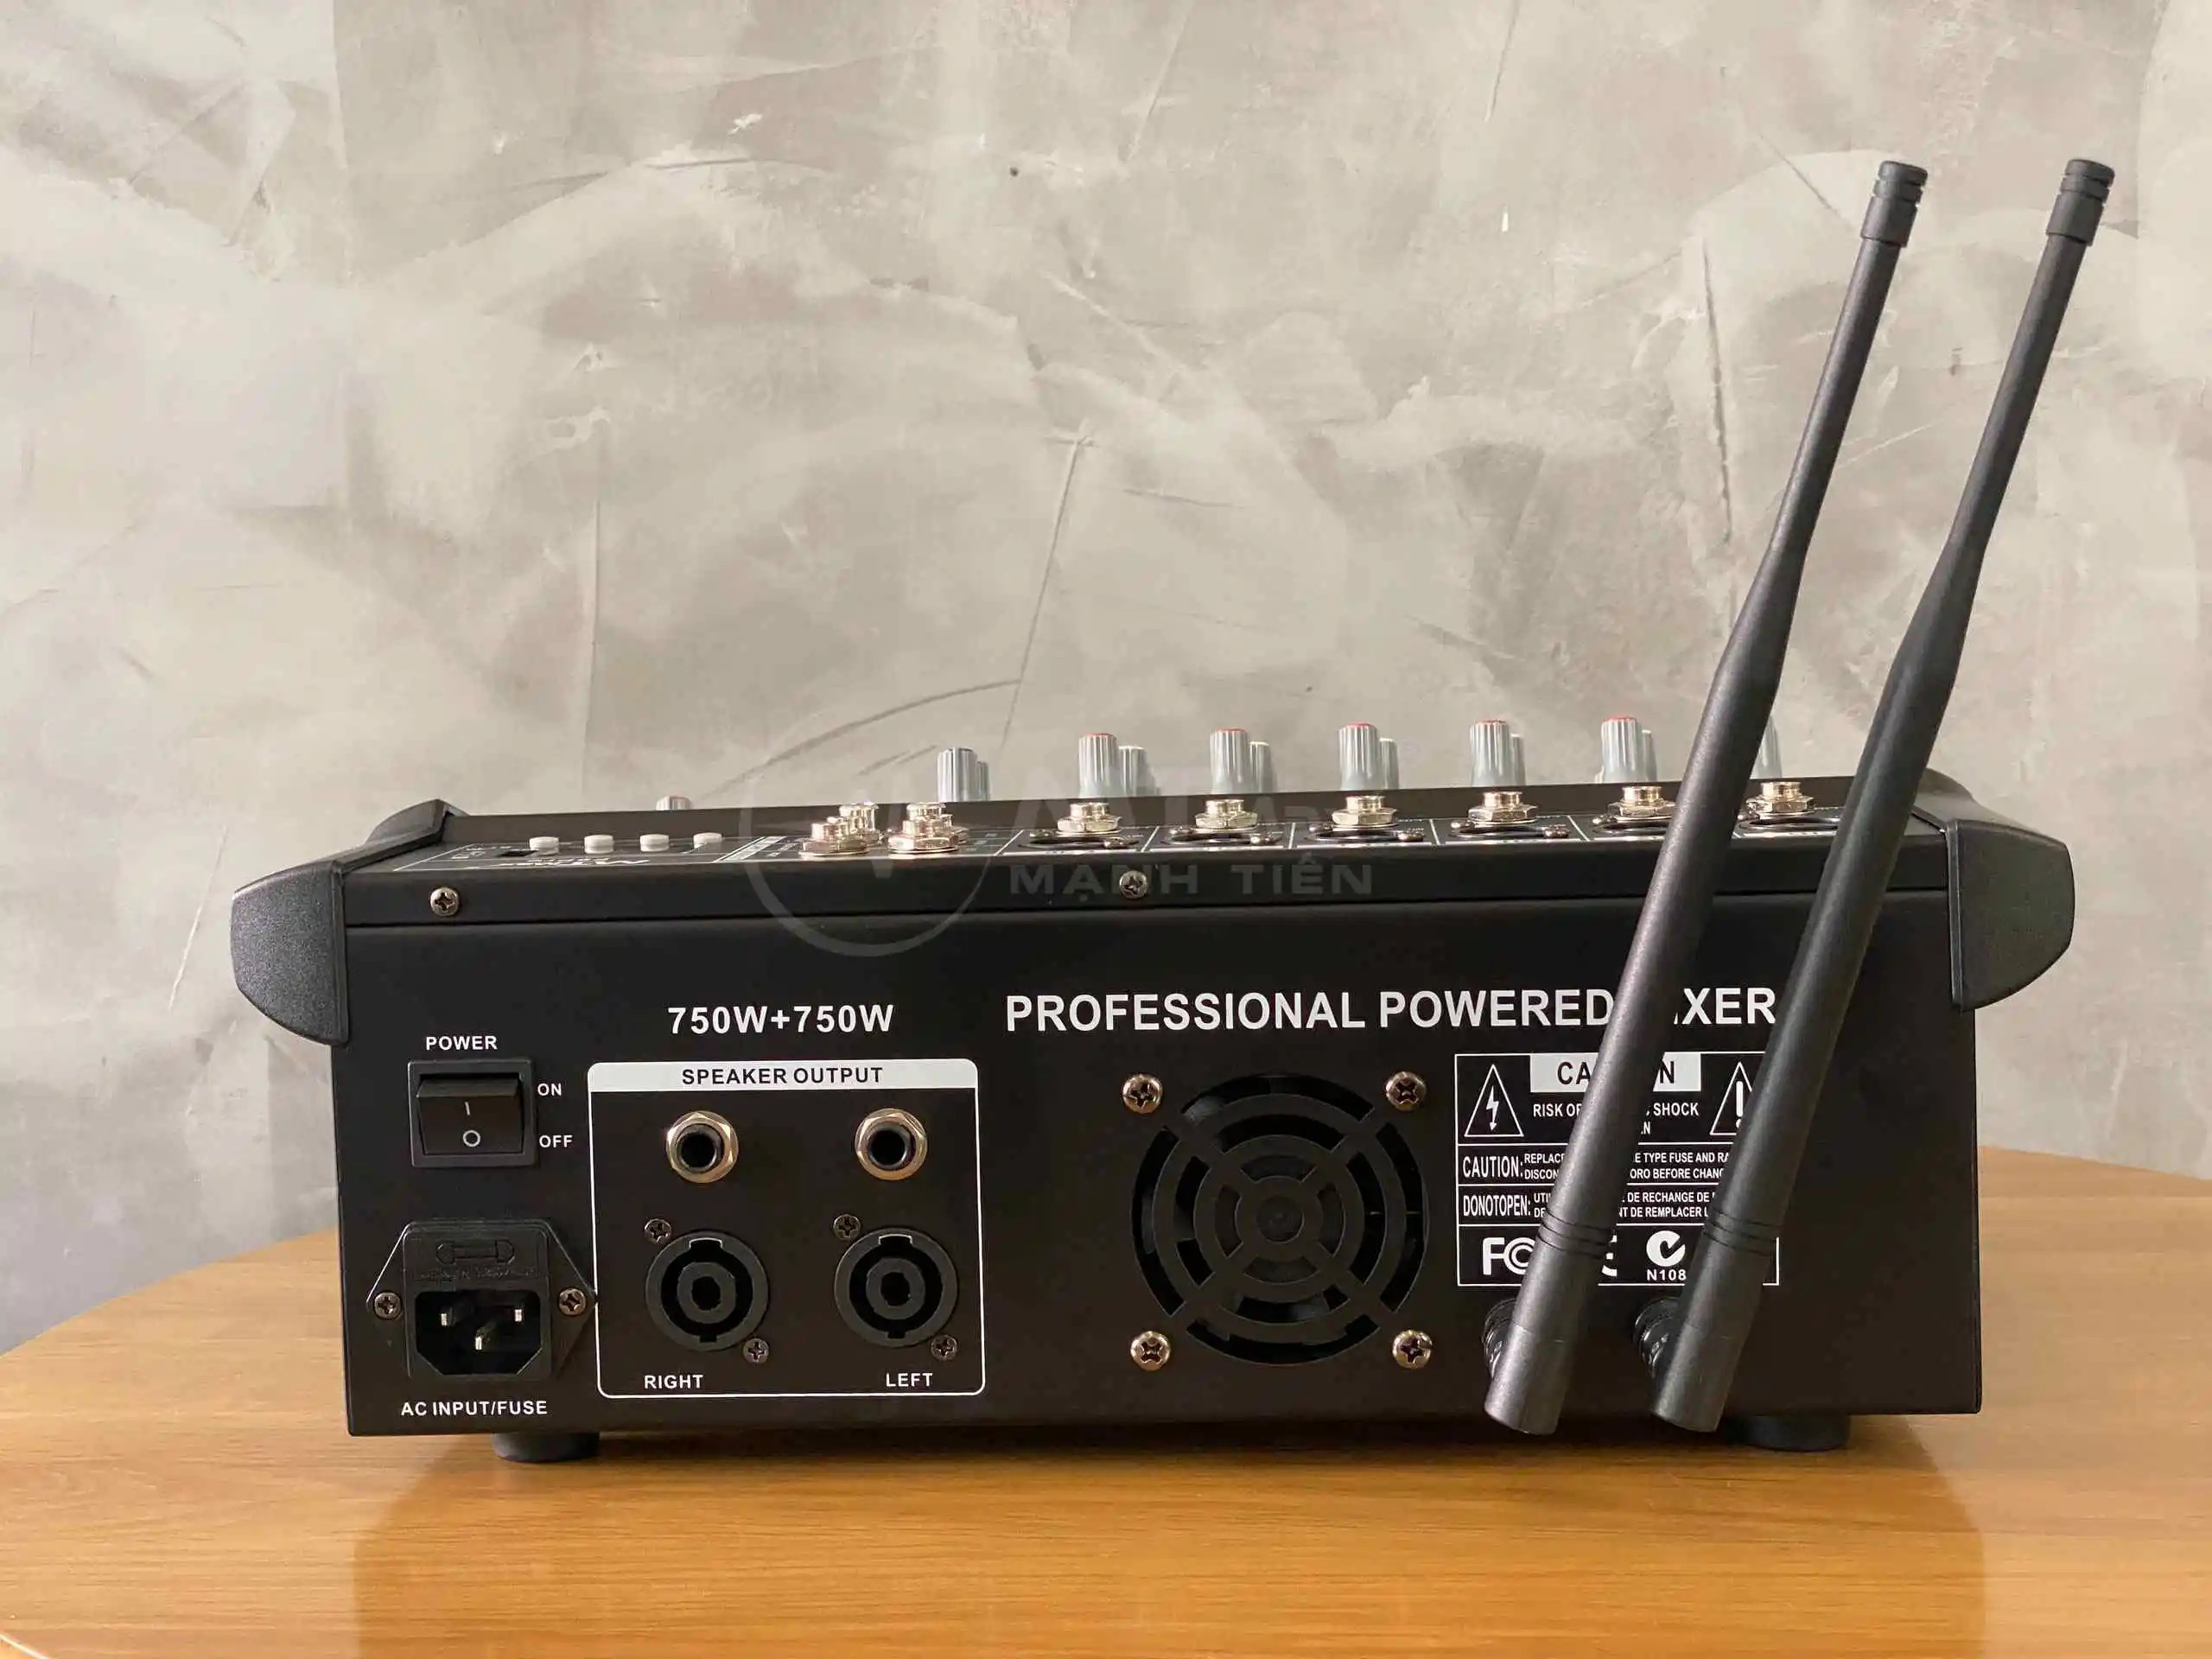 Mixer MTMax F9 Pro liền công xuất chuyên nghiệp tích hợp nhiều chức năng EQ reverb delay echo 16 chế độ kèm 2 micro không dây có combo dàn karaoke thỏa sức lựa chọn